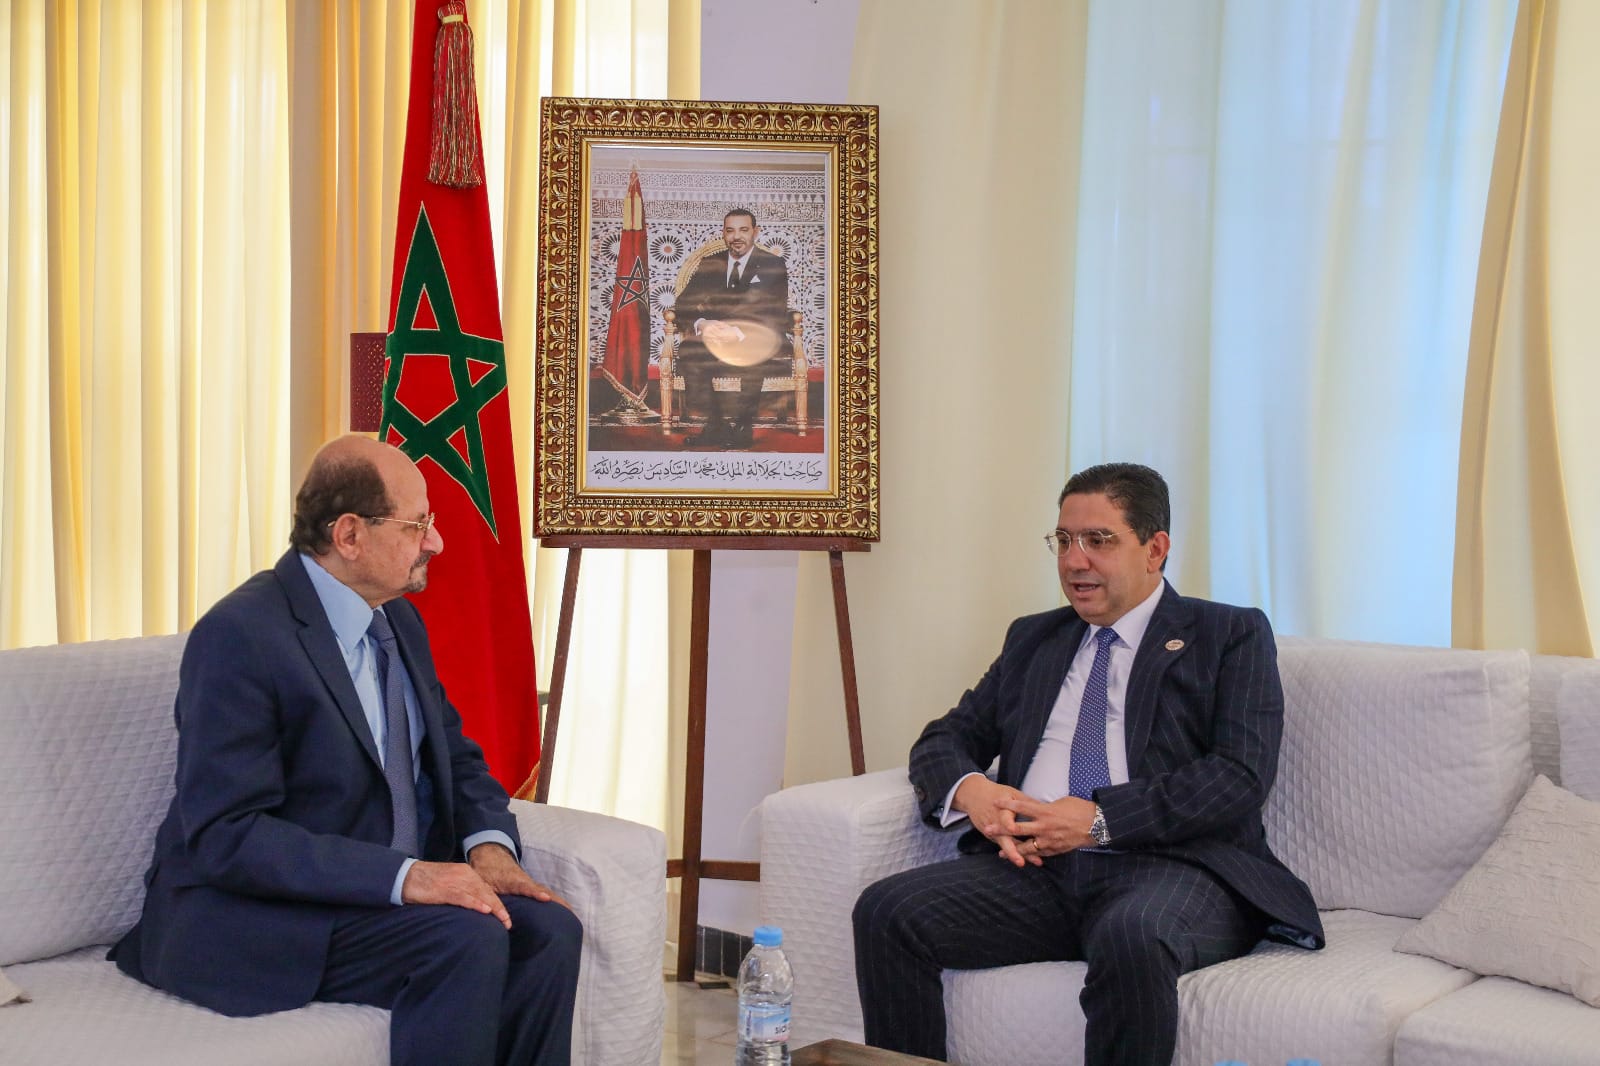 وزير الخارجية الدكتور شائع الزنداني يبحث  مع وزير الشؤون الخارجية والتعاون الأفريقي والمغاربة في الخارج سبل تعزيز وتطوير العلاقات الثنائية بين البلدين